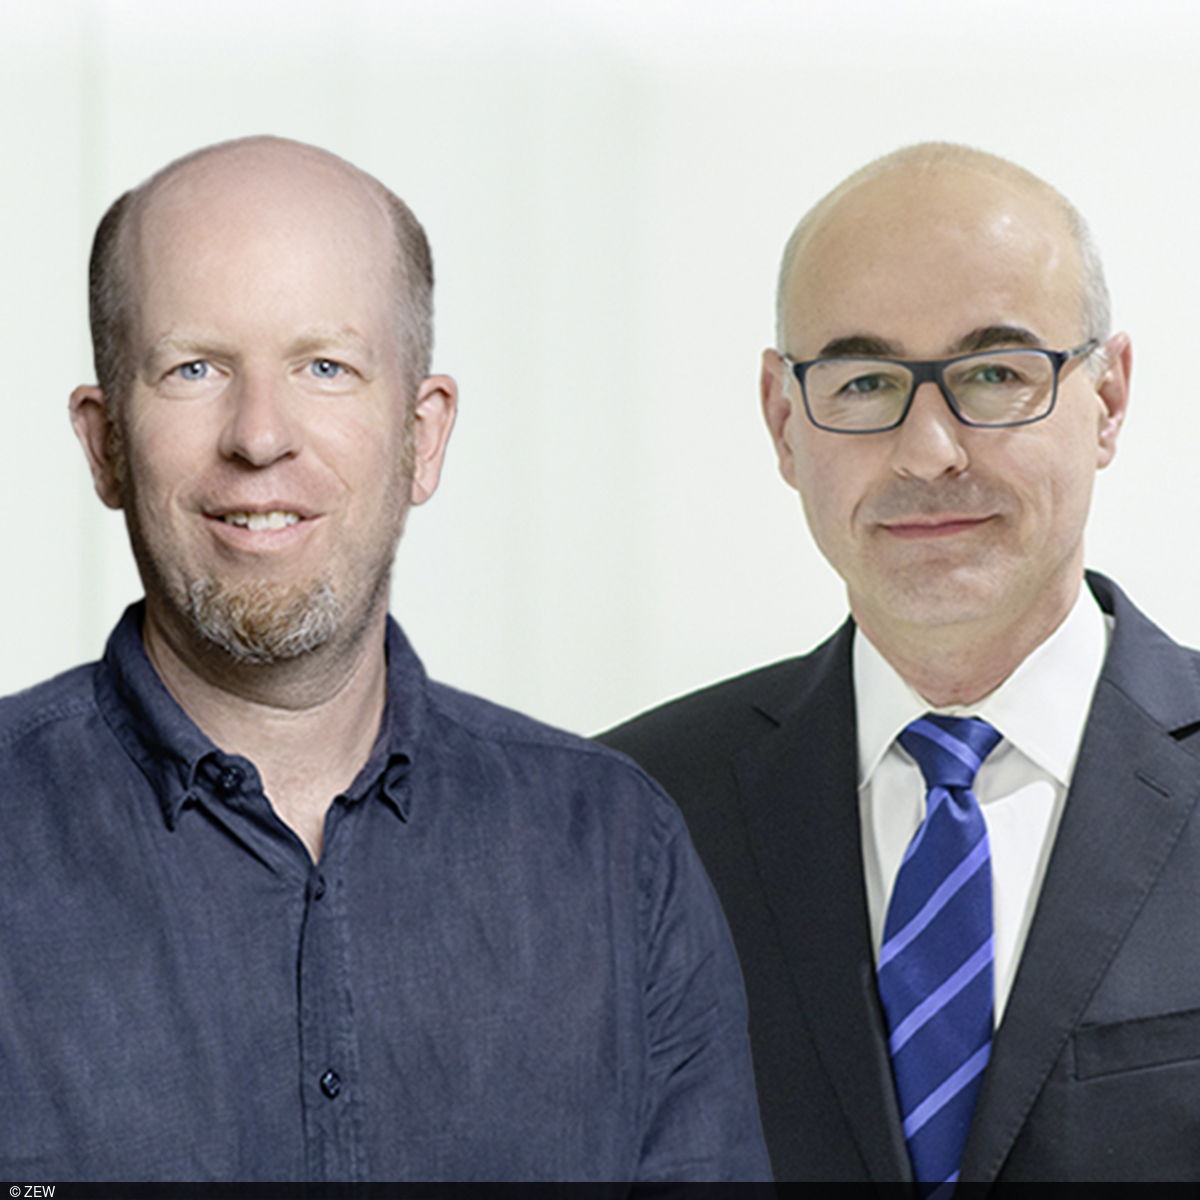 Portraitbild von Prof. Holger Stichnoth (links) und ZEW-Präsident Achim Wambach (rechts im Bild) vor einem strukturierten, hellen Hintergrund blauen Hintergrund